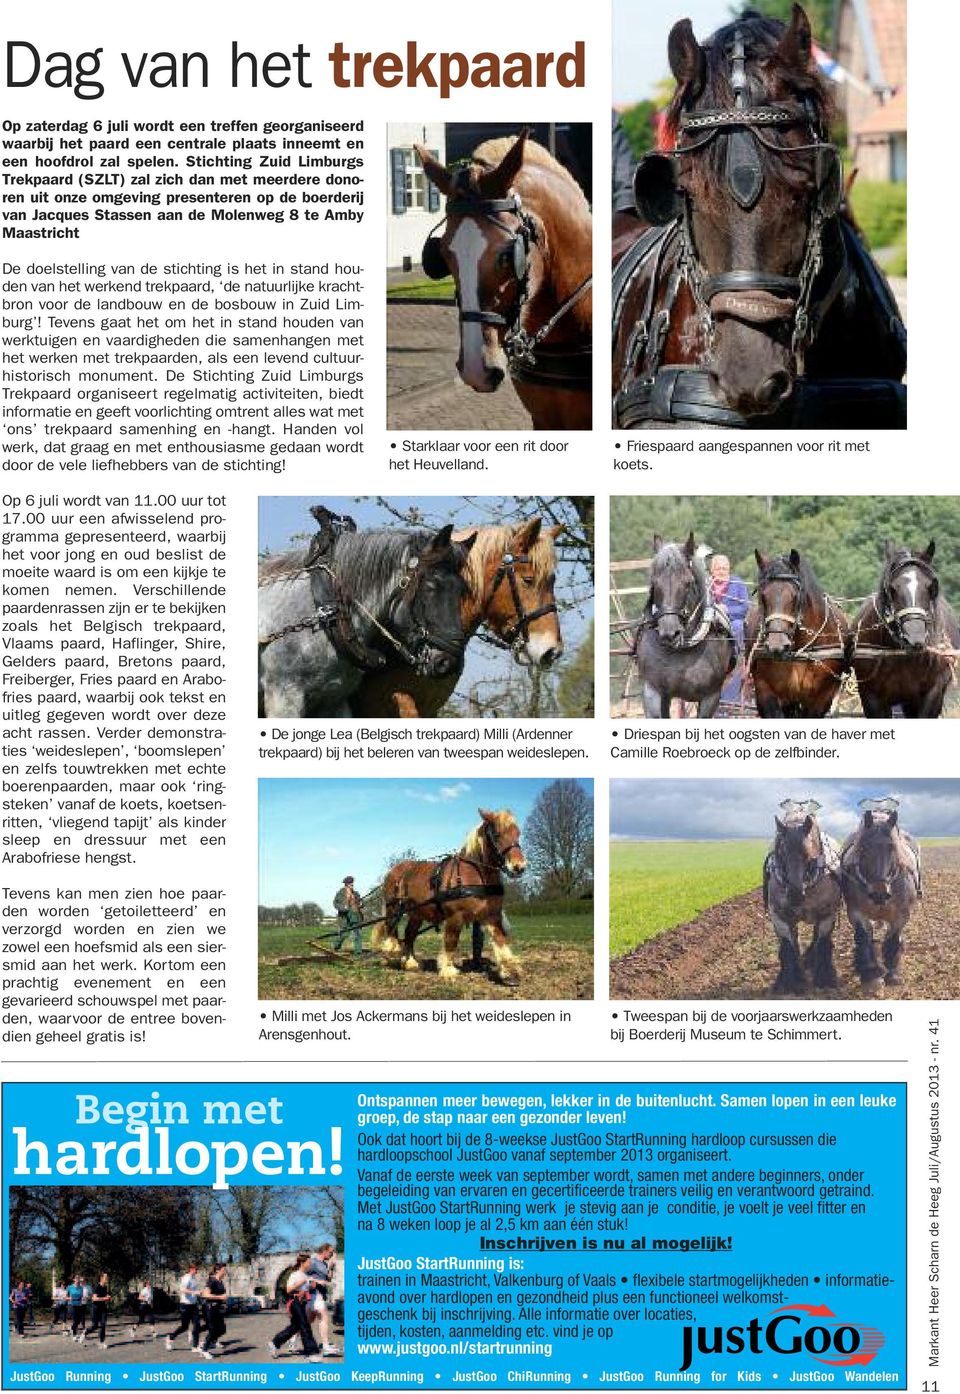 de stichting is het in stand houden van het werkend trekpaard, de natuurlijke krachtbron voor de landbouw en de bosbouw in Zuid Limburg!